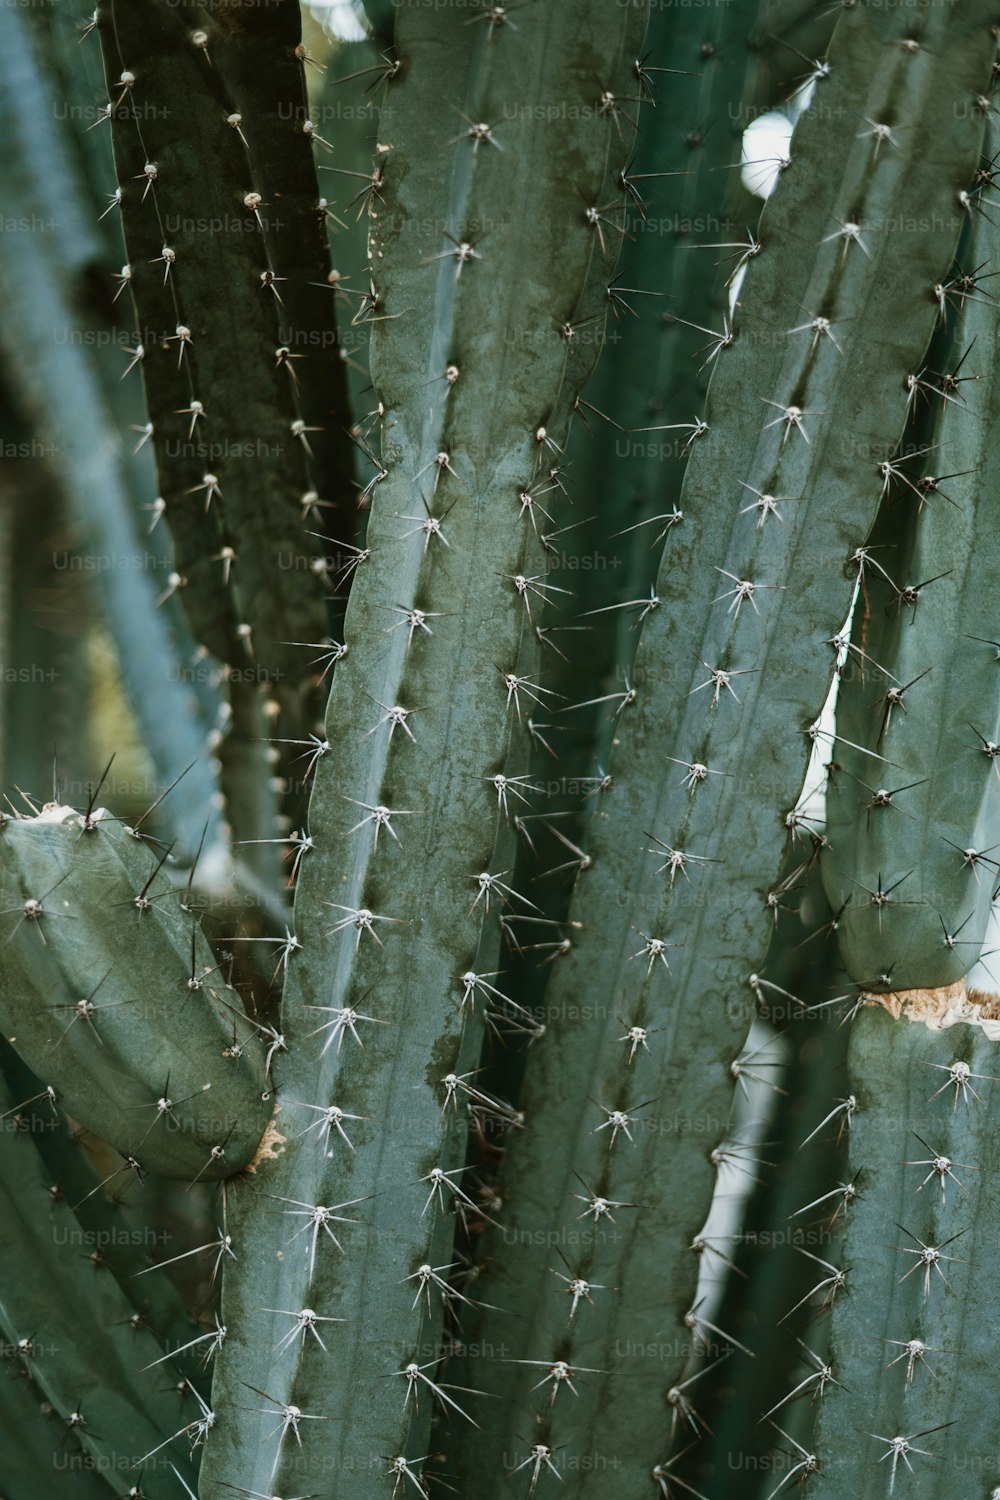 Un primer plano de una planta de cactus con muchas hojas